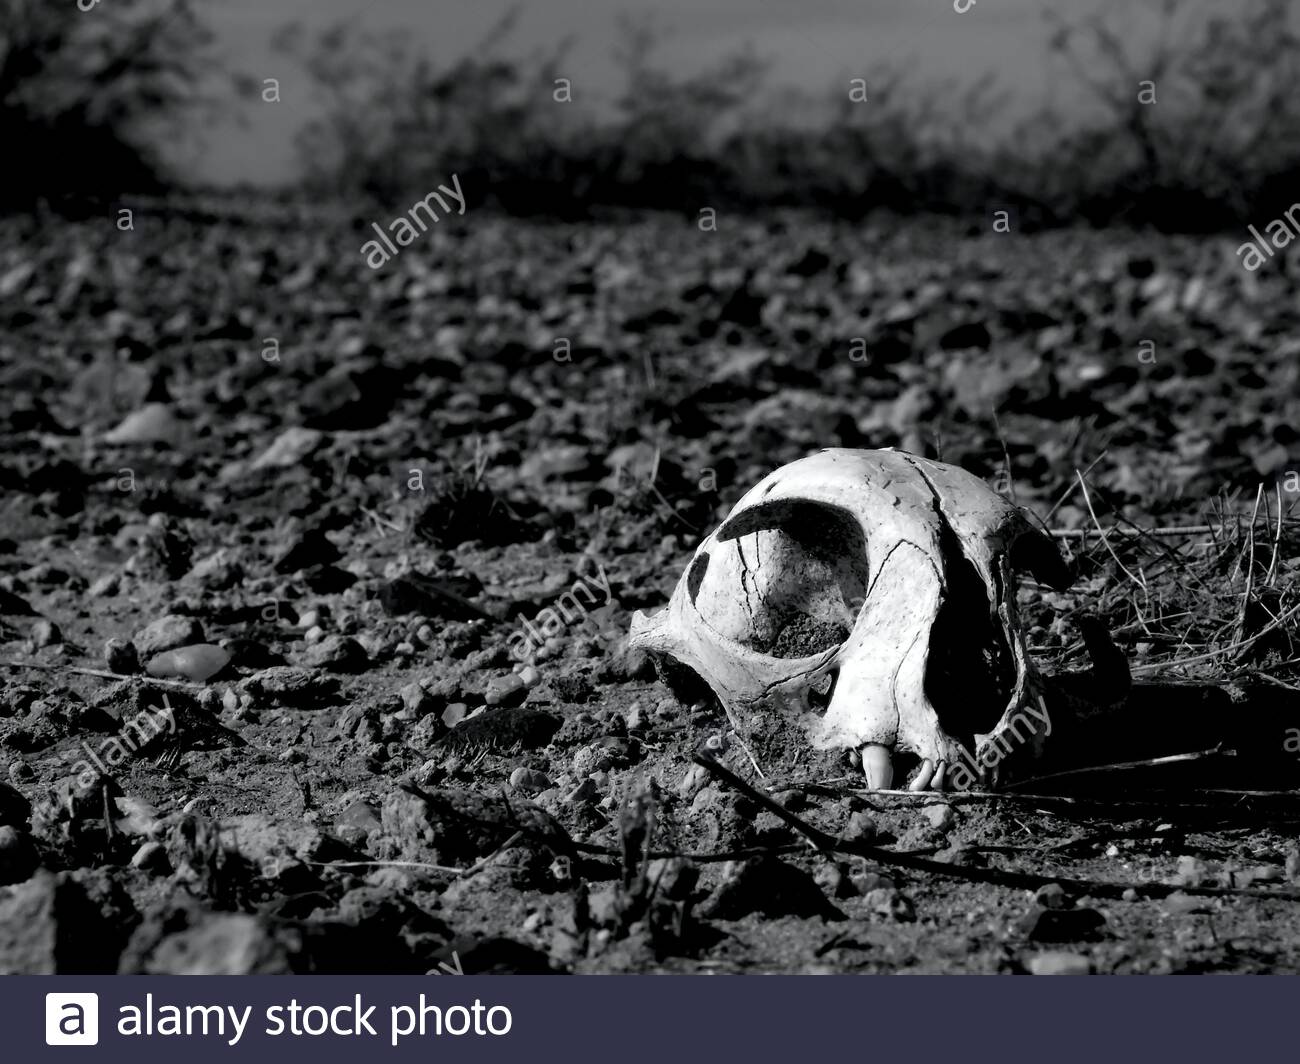 un vieux crane de chat depeint a moitie enterre dans un desert d arizona impitoyable prise en noir et blanc 2b8ewc8